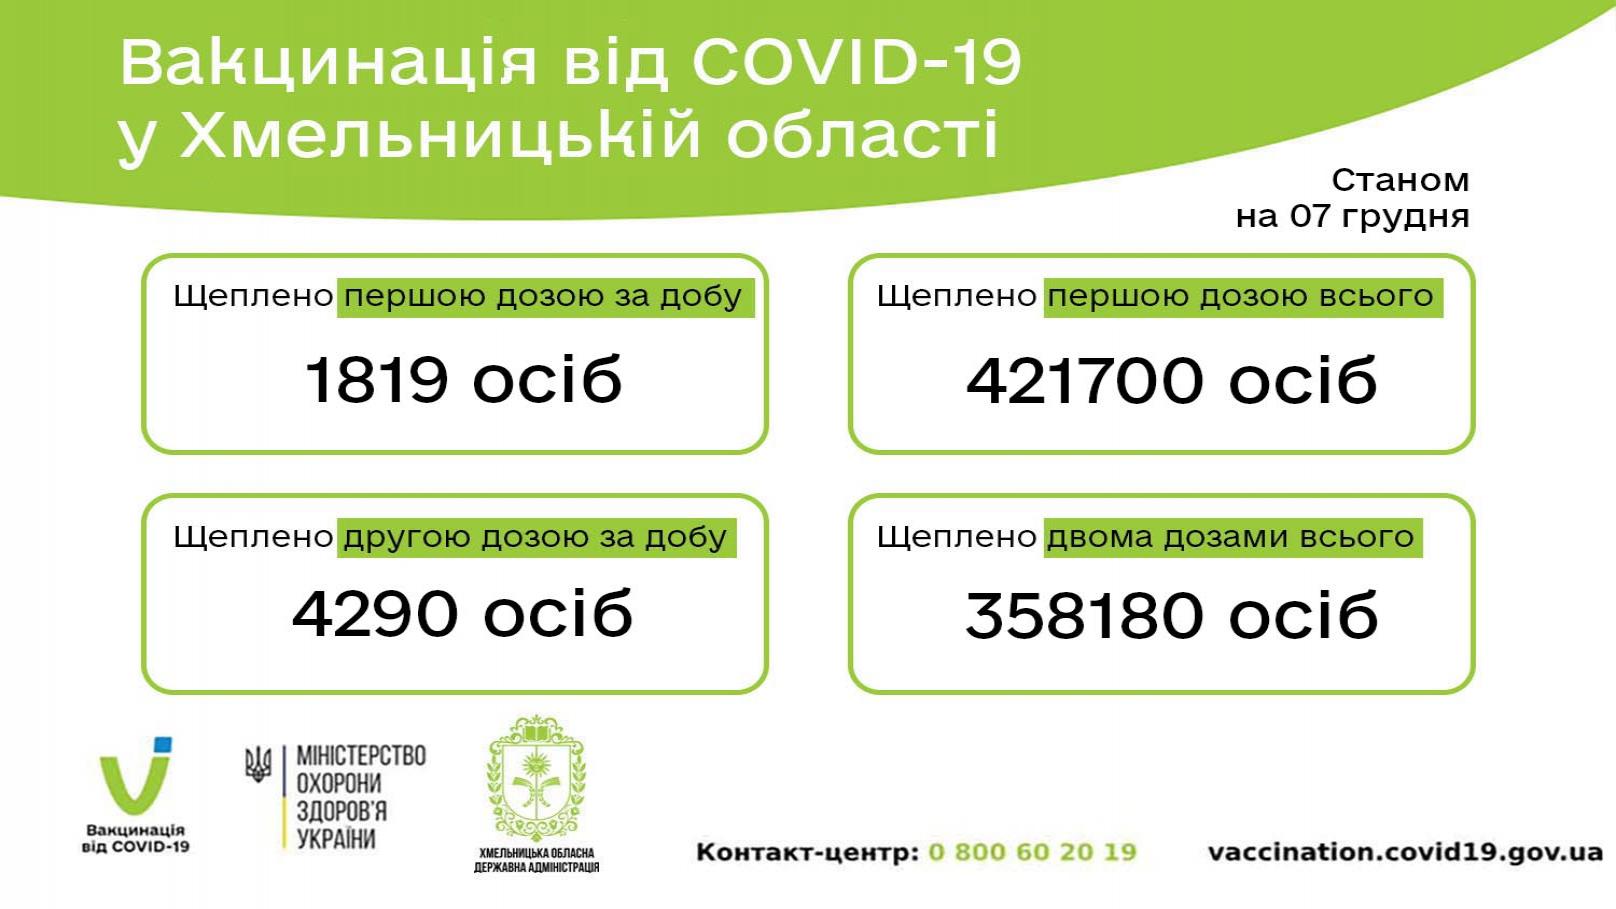 http://dunrada.gov.ua/uploadfile/archive_news/2021/12/07/2021-12-07_5499/images/images-27282.jpg